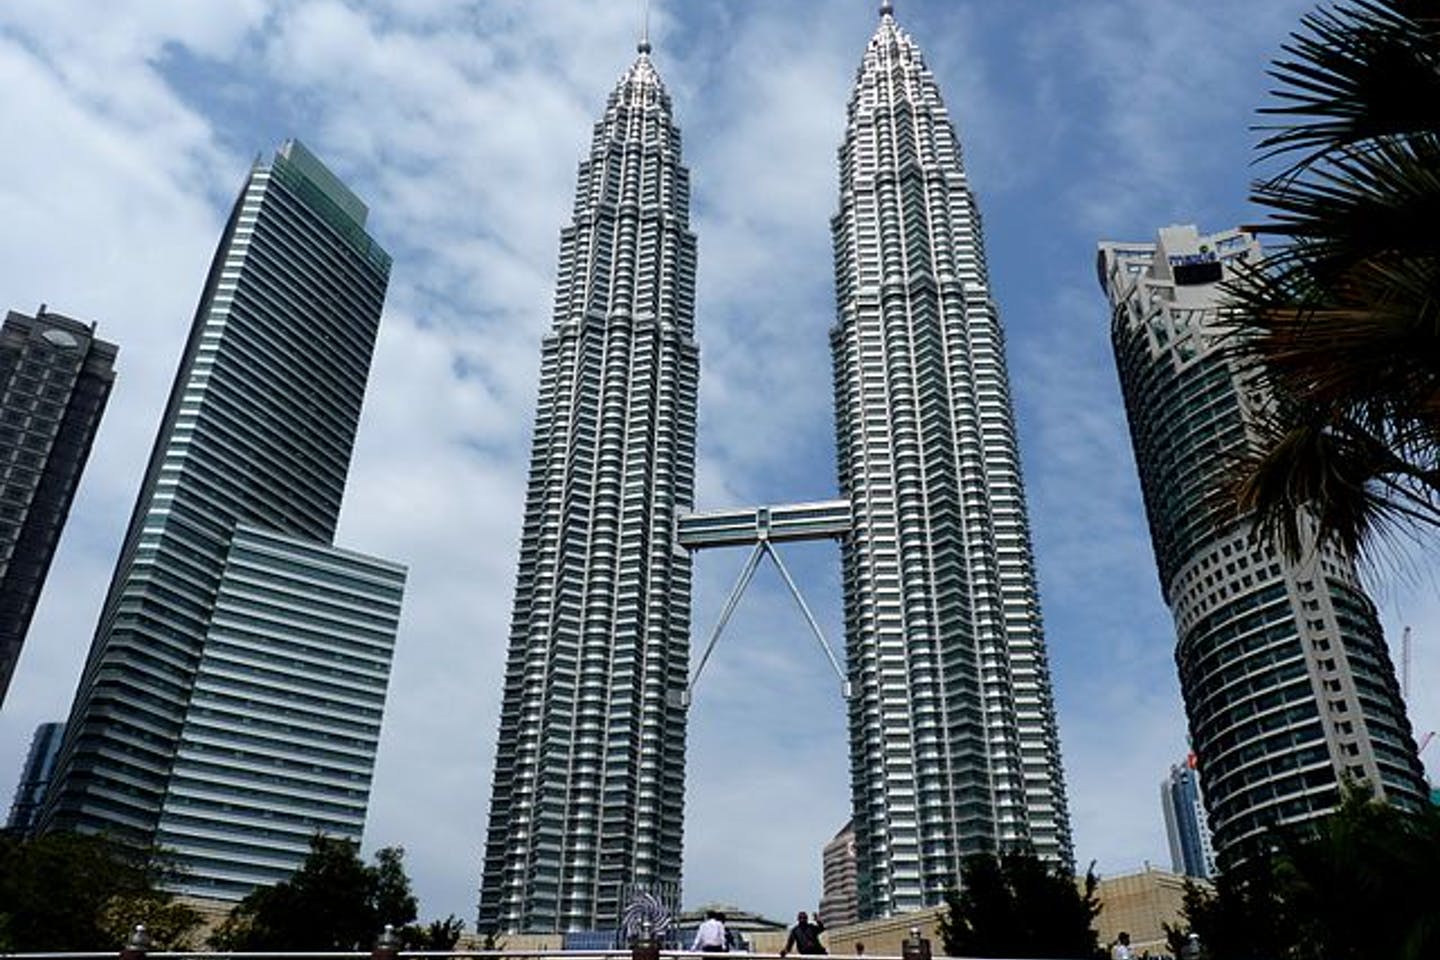 640px the petronas twin towers in kuala lumpur malaysia